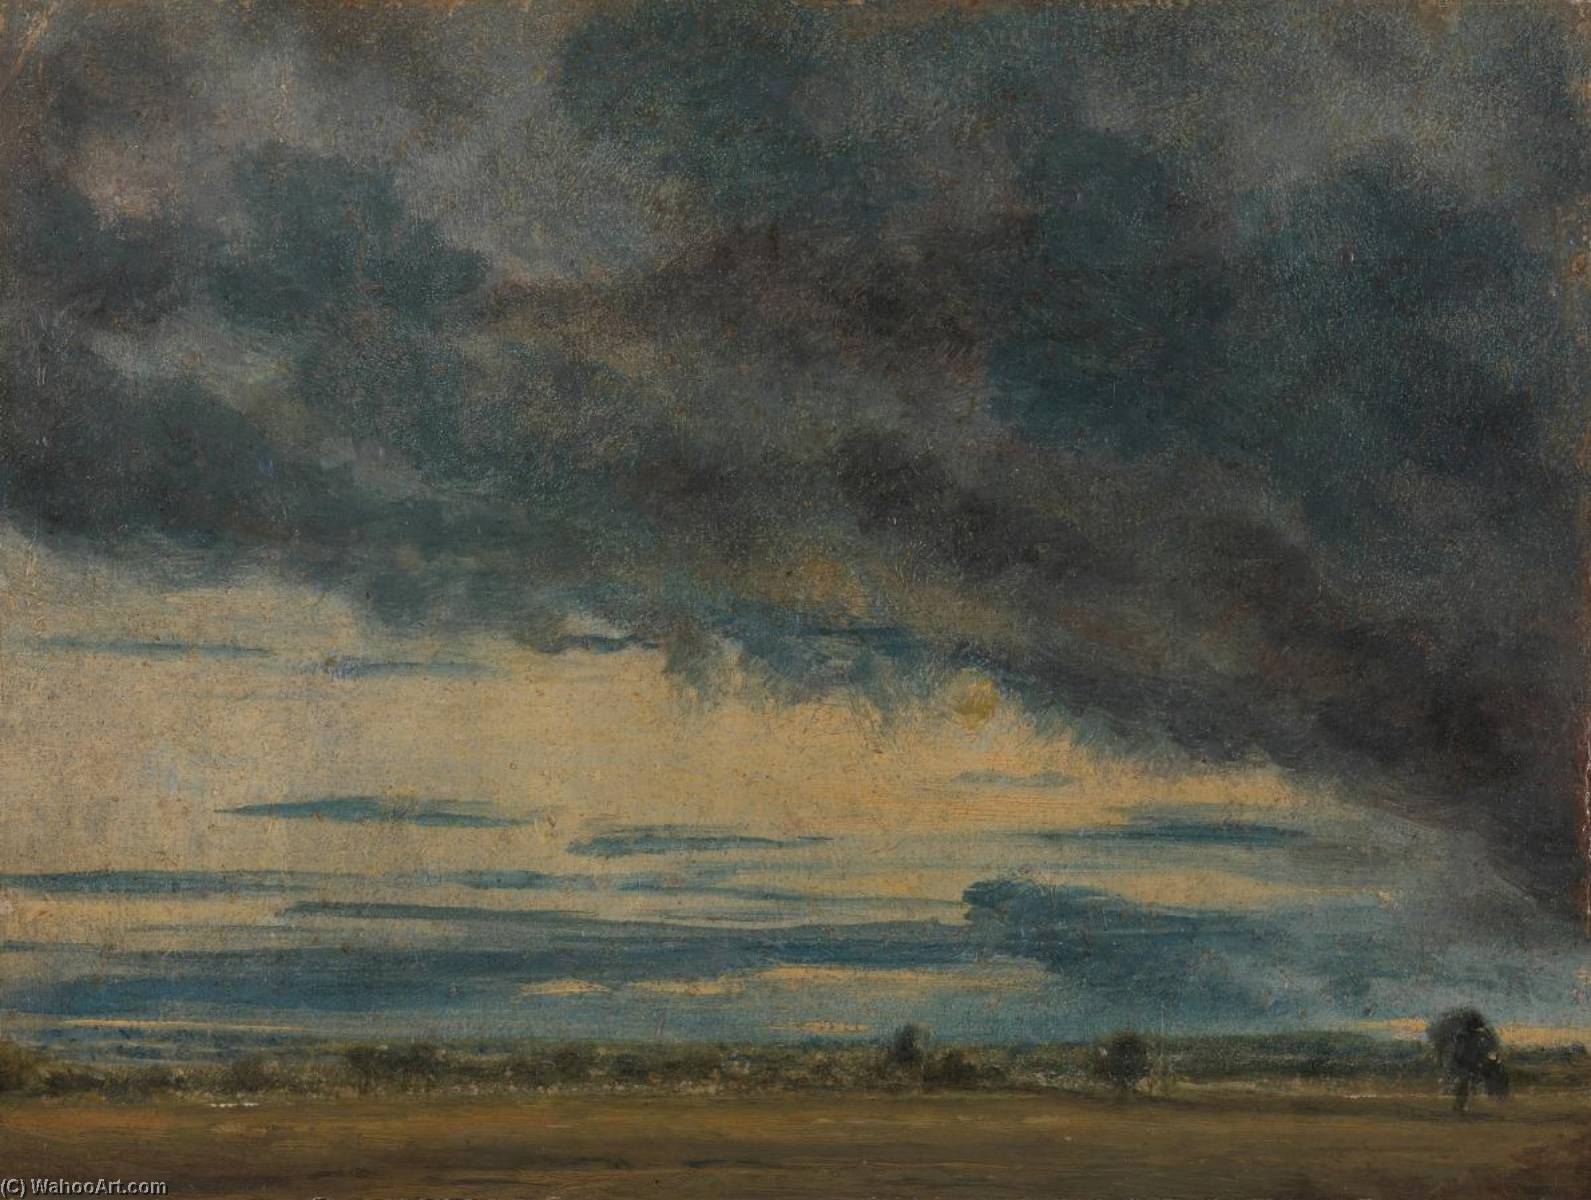 WikiOO.org - Encyclopedia of Fine Arts - Målning, konstverk John Constable - Evening Landscape after Rain